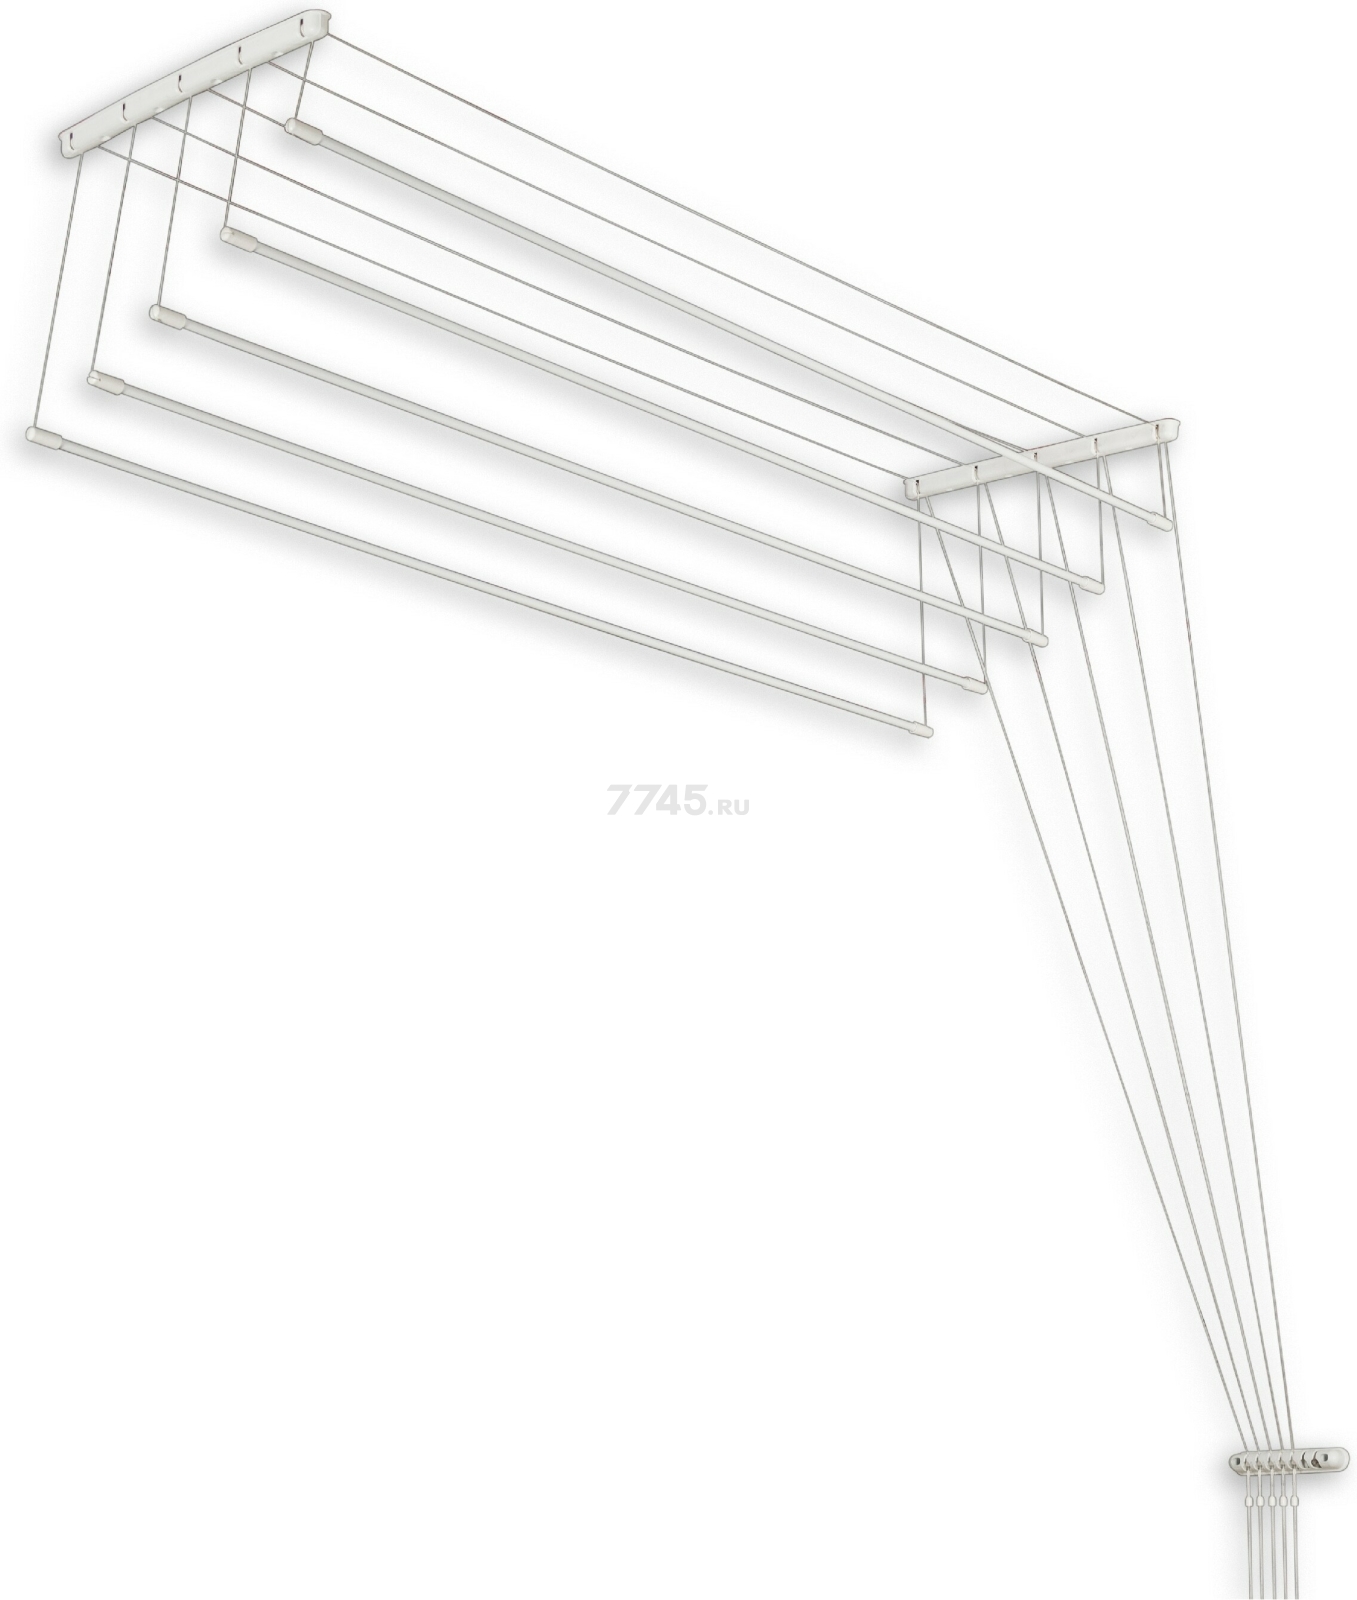 Сушилка для белья потолочная PERFECTO LINEA 1,4 м белая (36-002141)